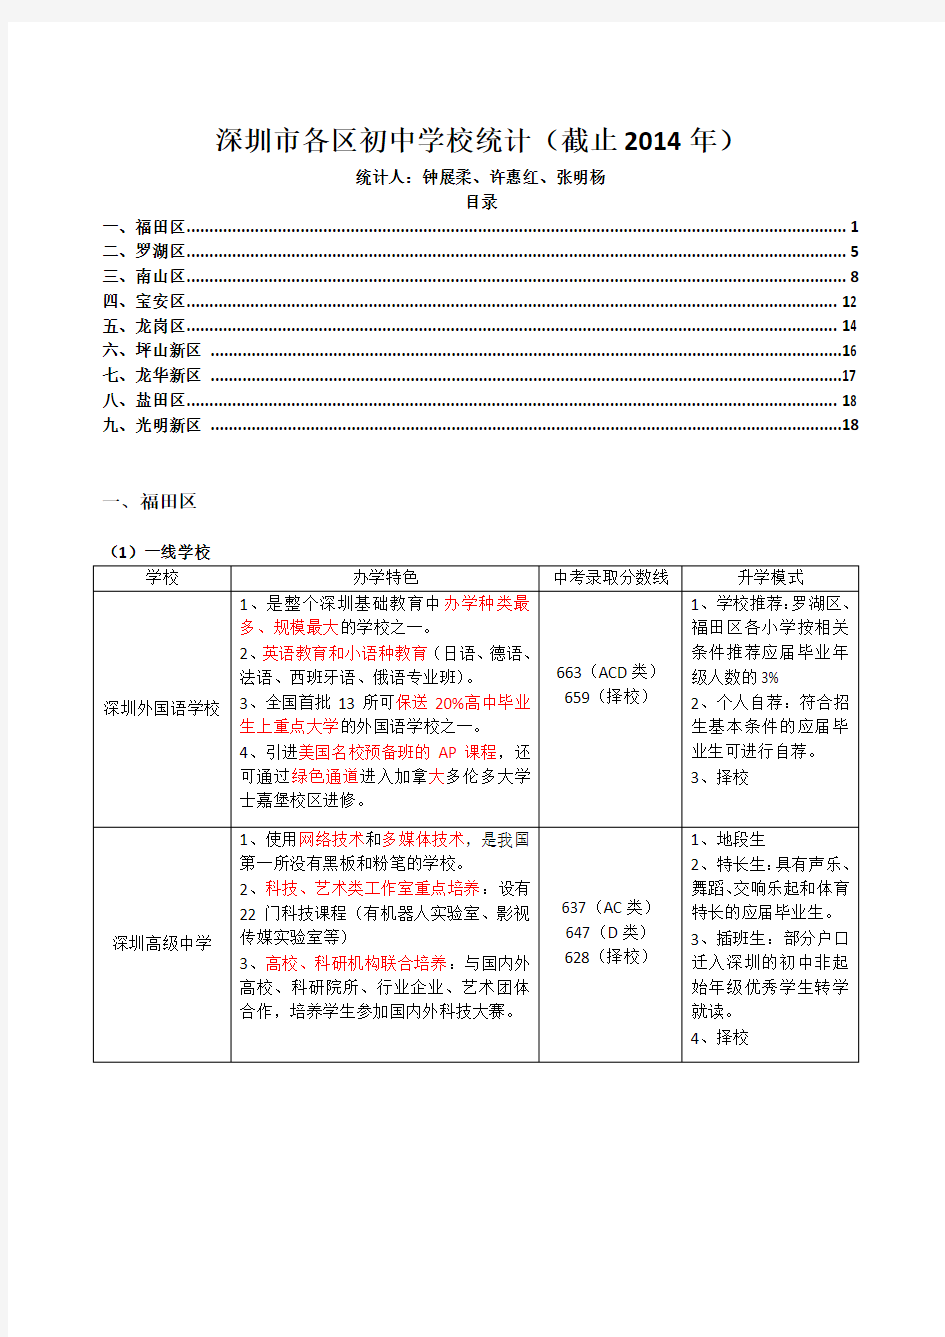 深圳市各区初中学校统计(截止2014年)